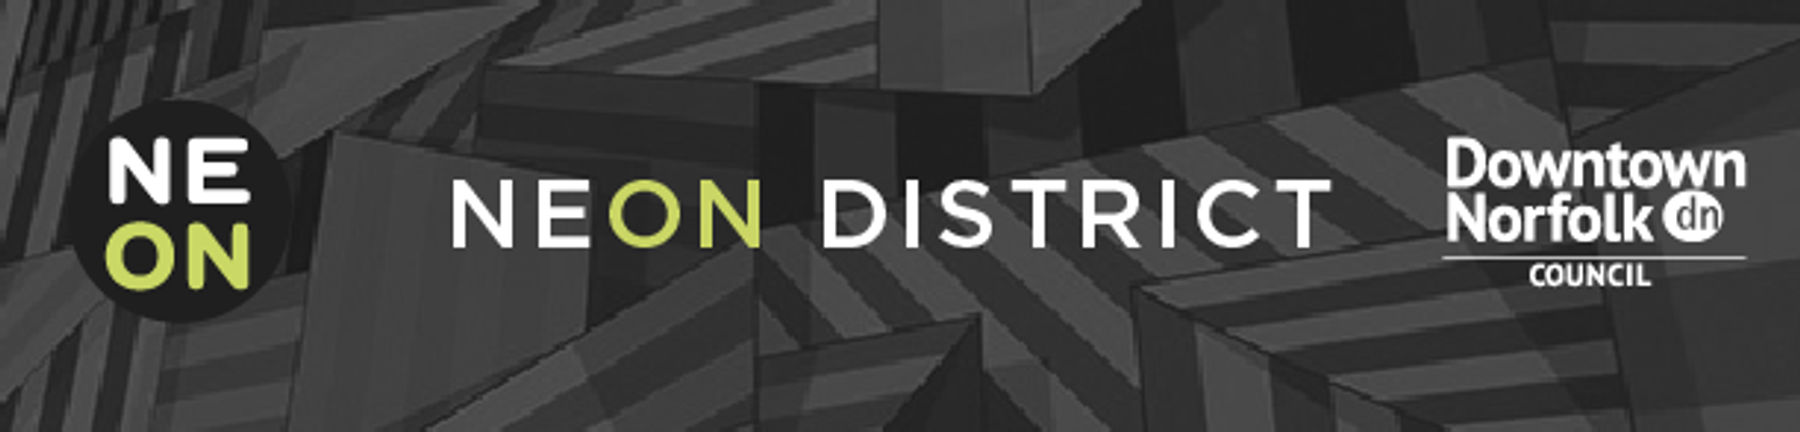 NEON District Newsletter